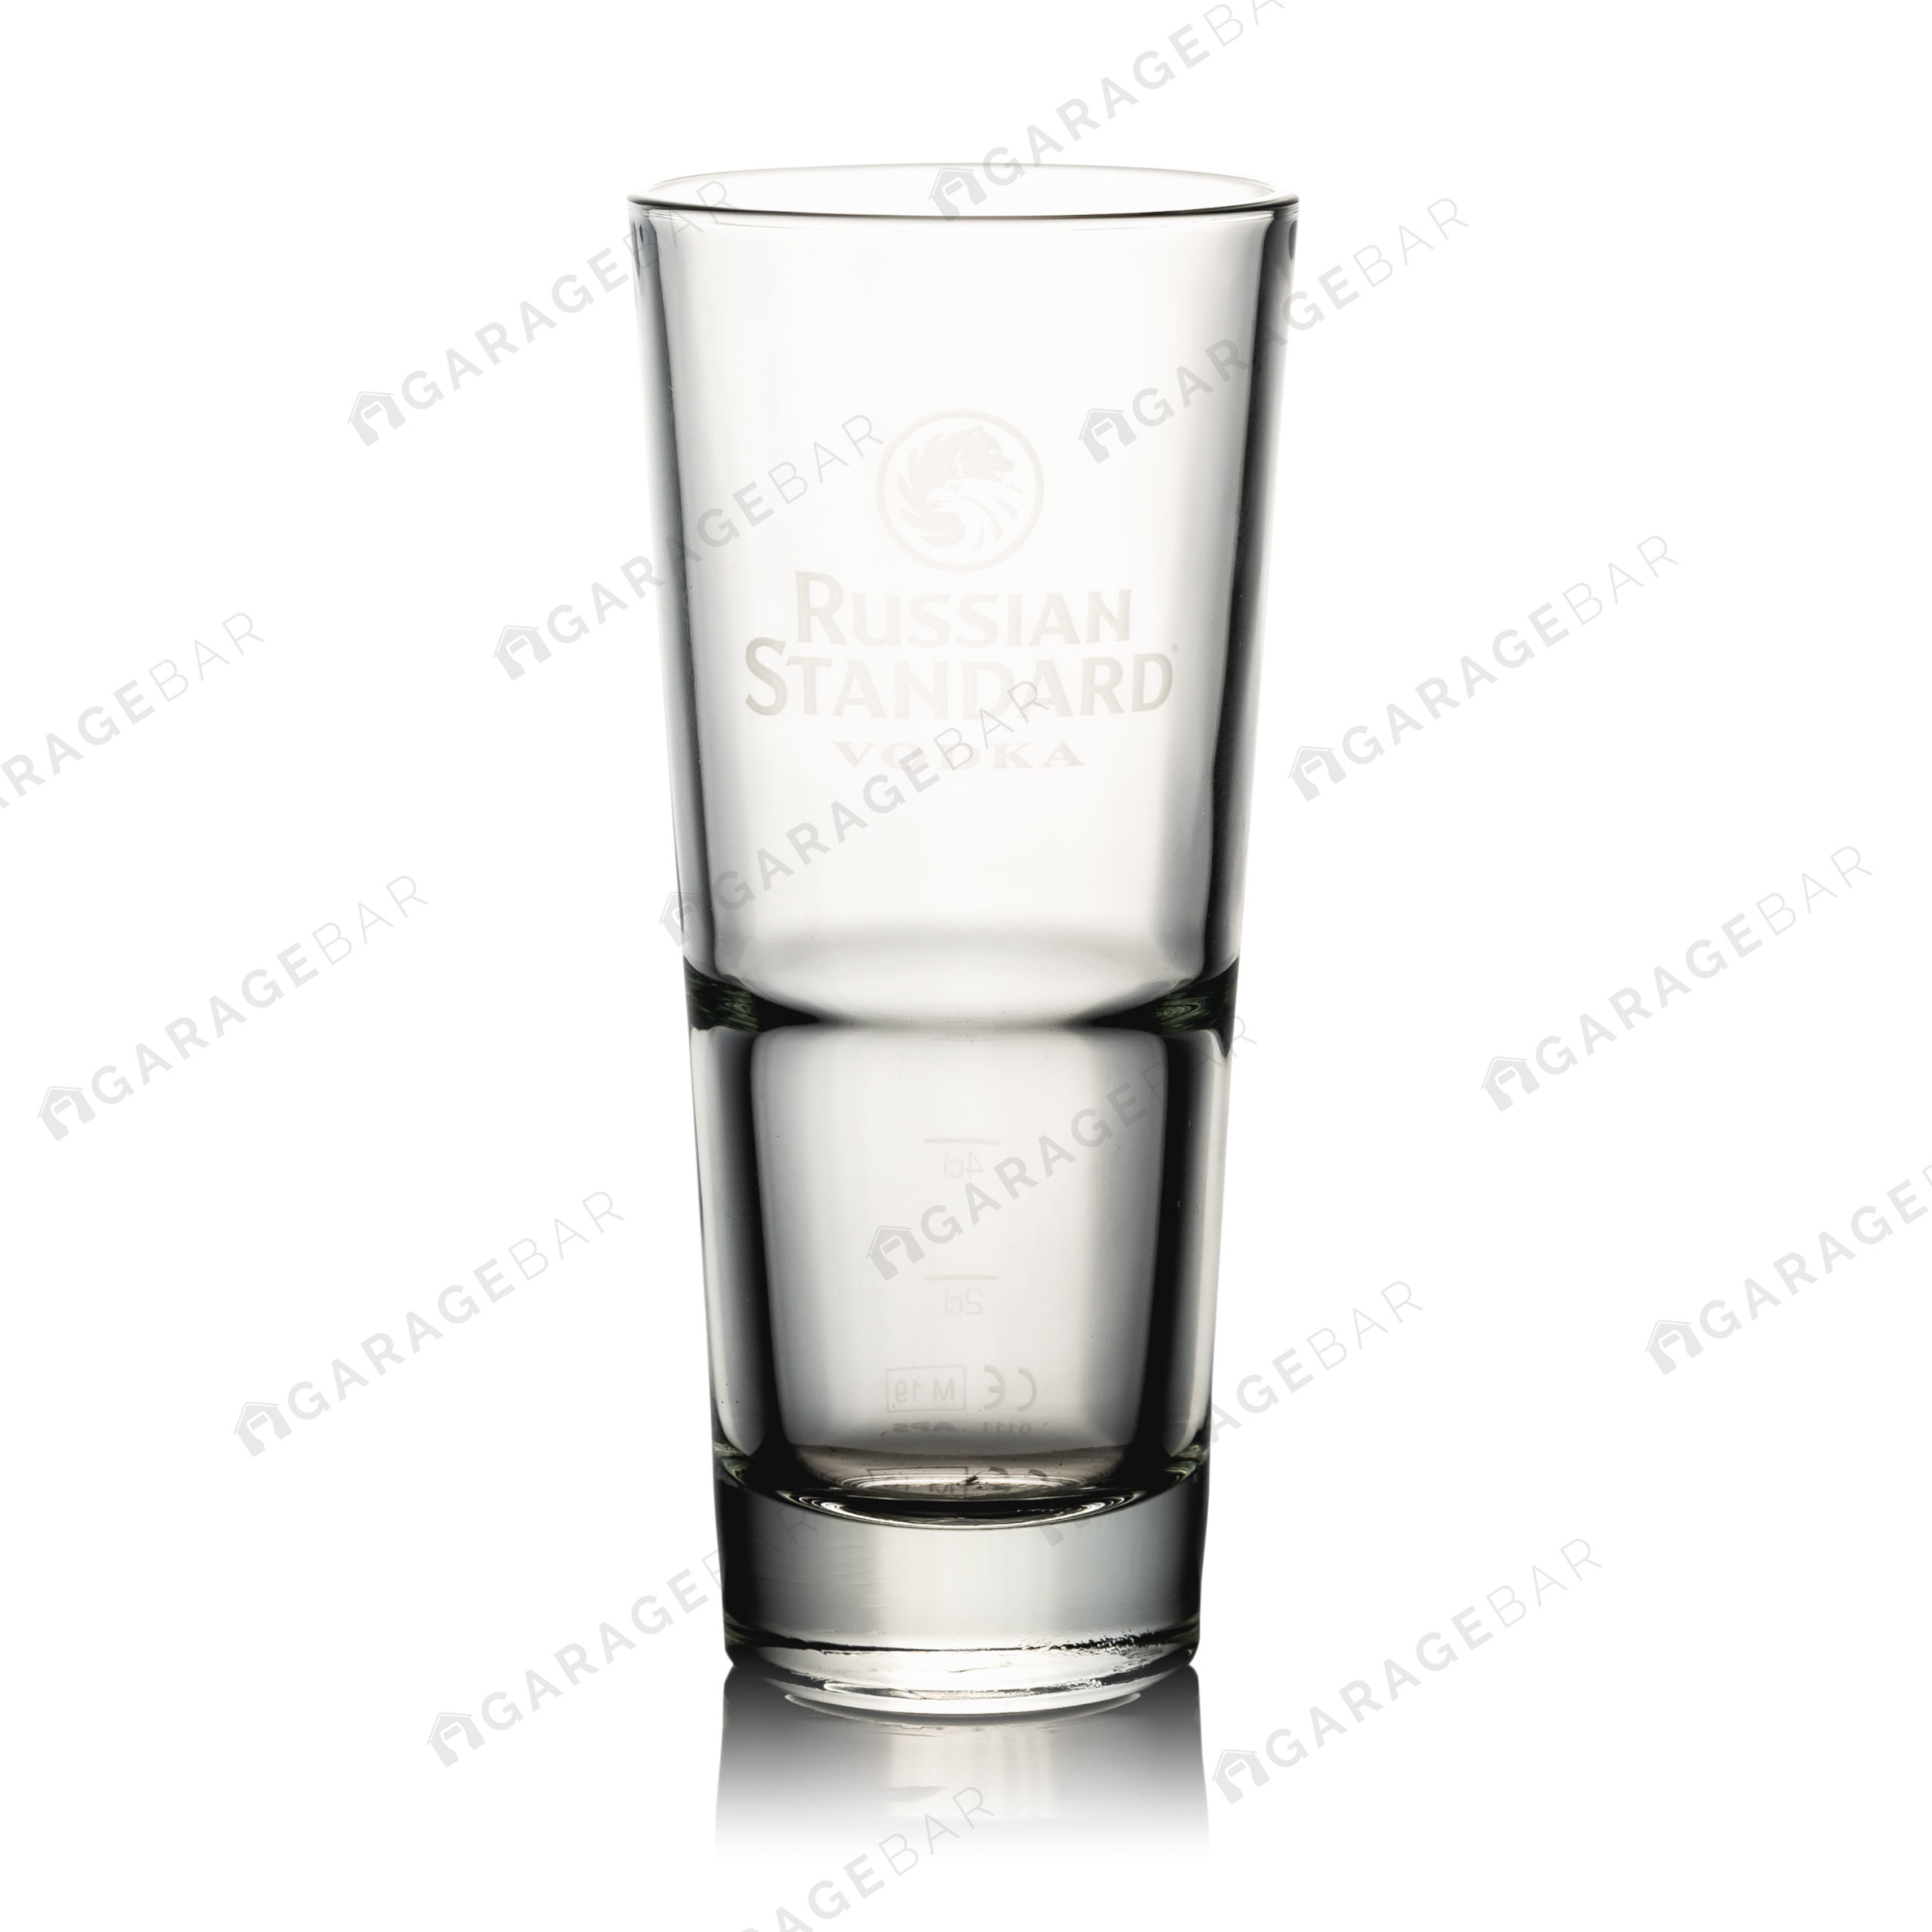 Russian Standard Vodka Glass